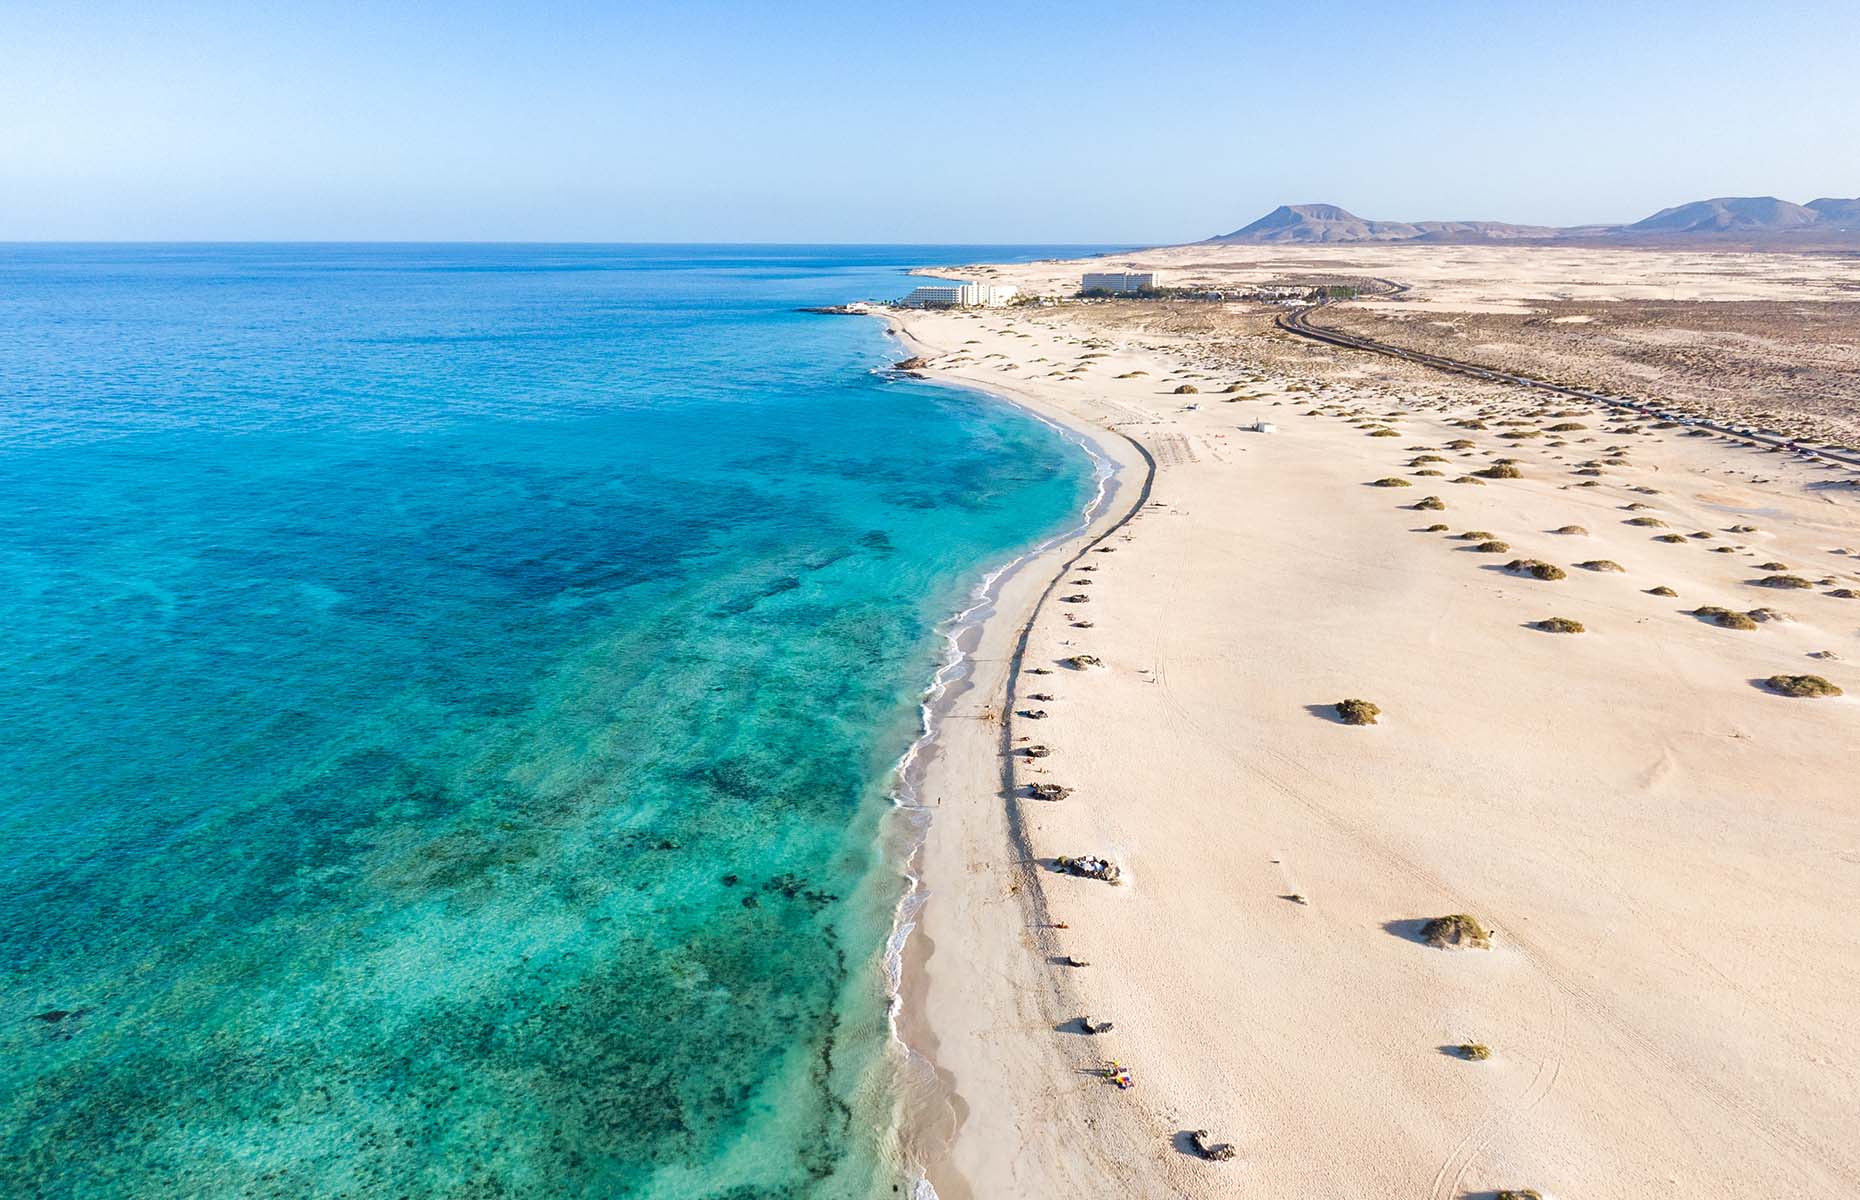 Las Dunas near Corralejo in Fuerteventura (Image: Juergen_Wallstabe/Shutterstock)